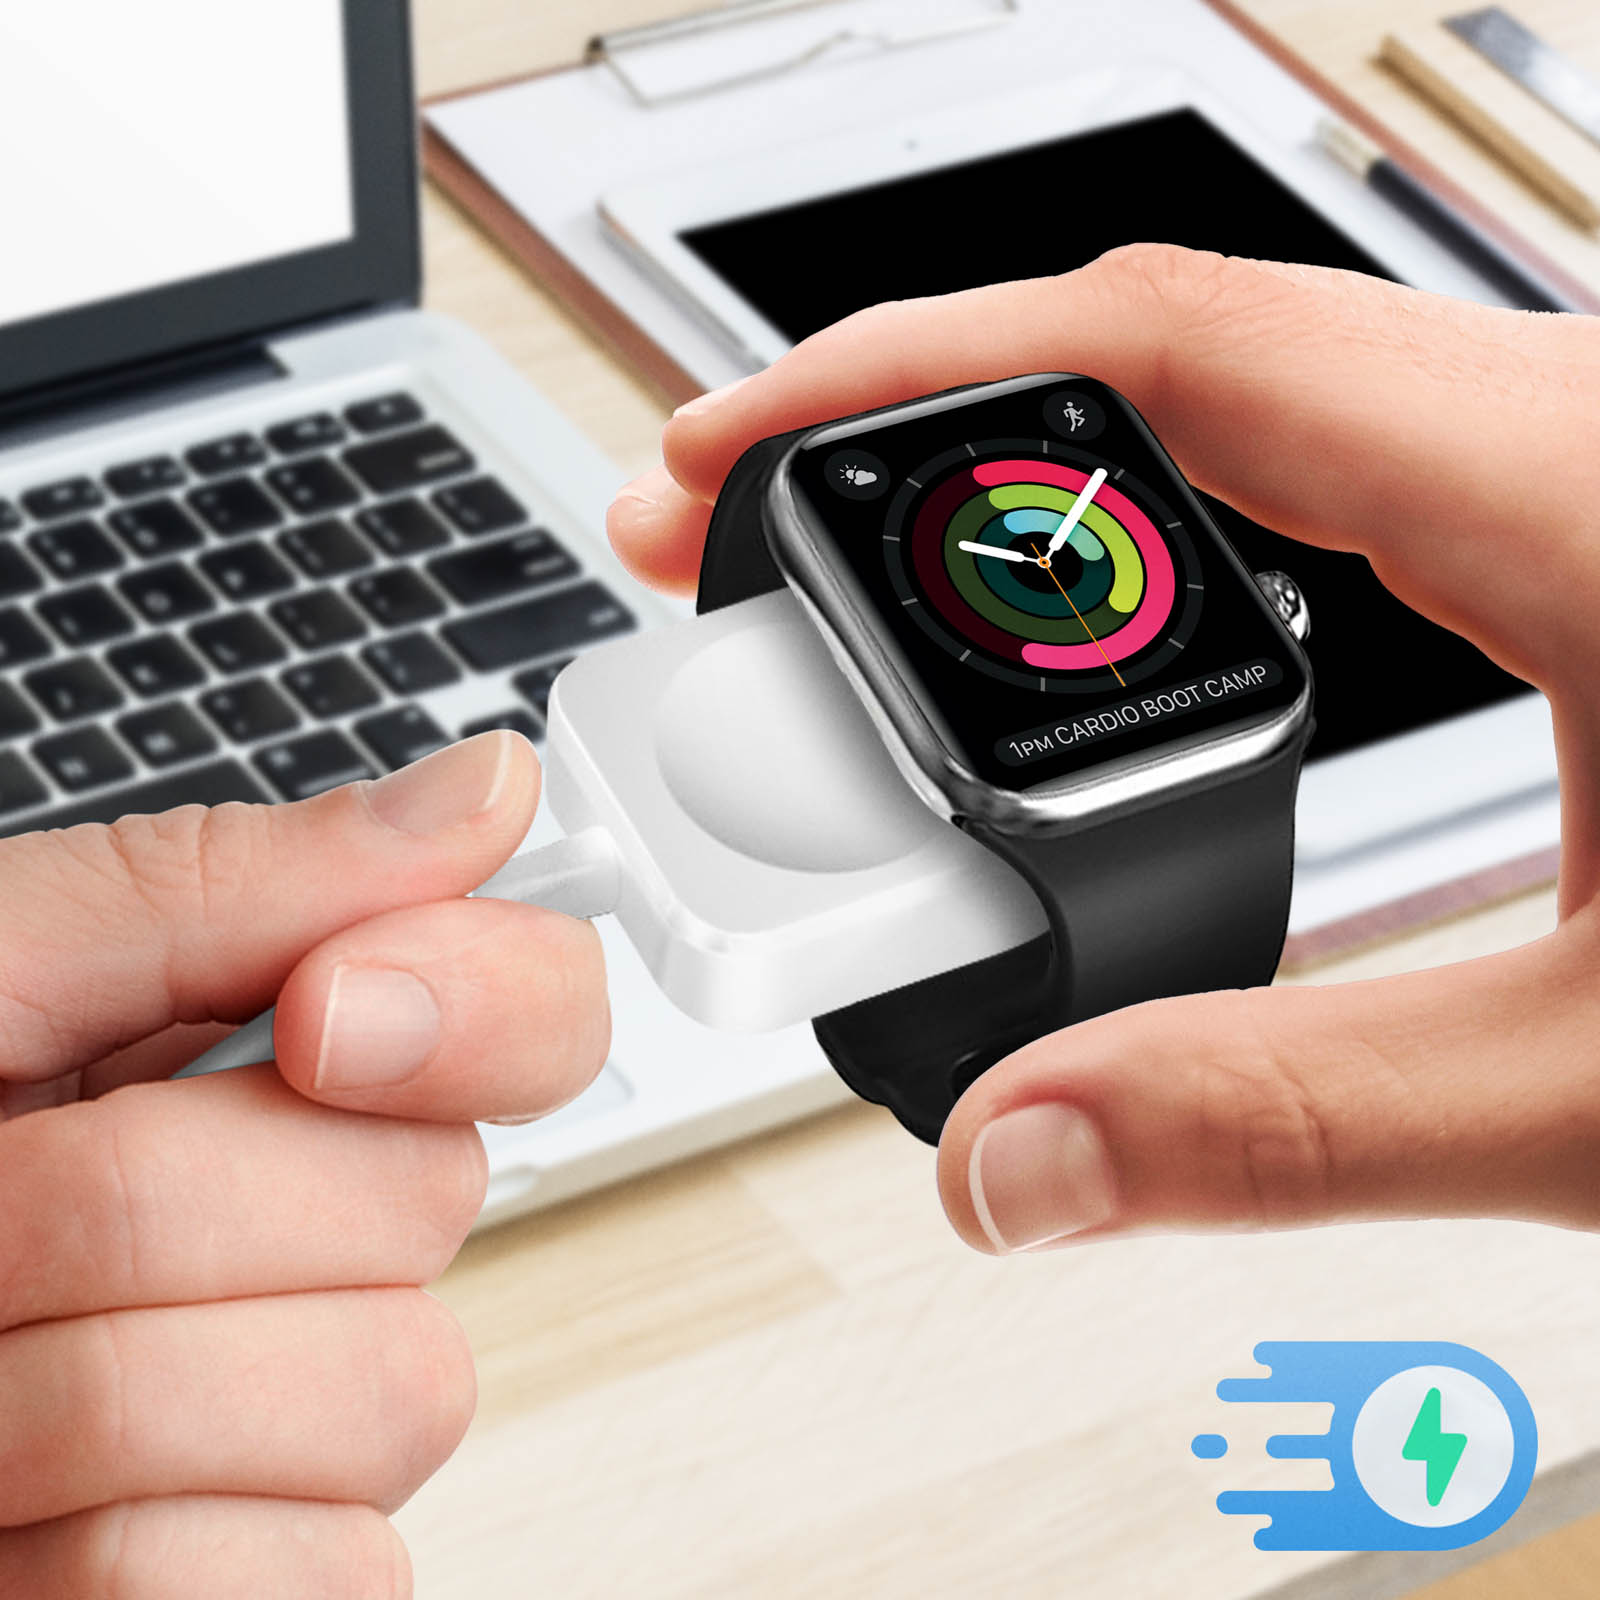 Ladekabel USB AVIZAR Apple, Apple Ladegerät Weiß für magnetischem Anschluss mit Watch